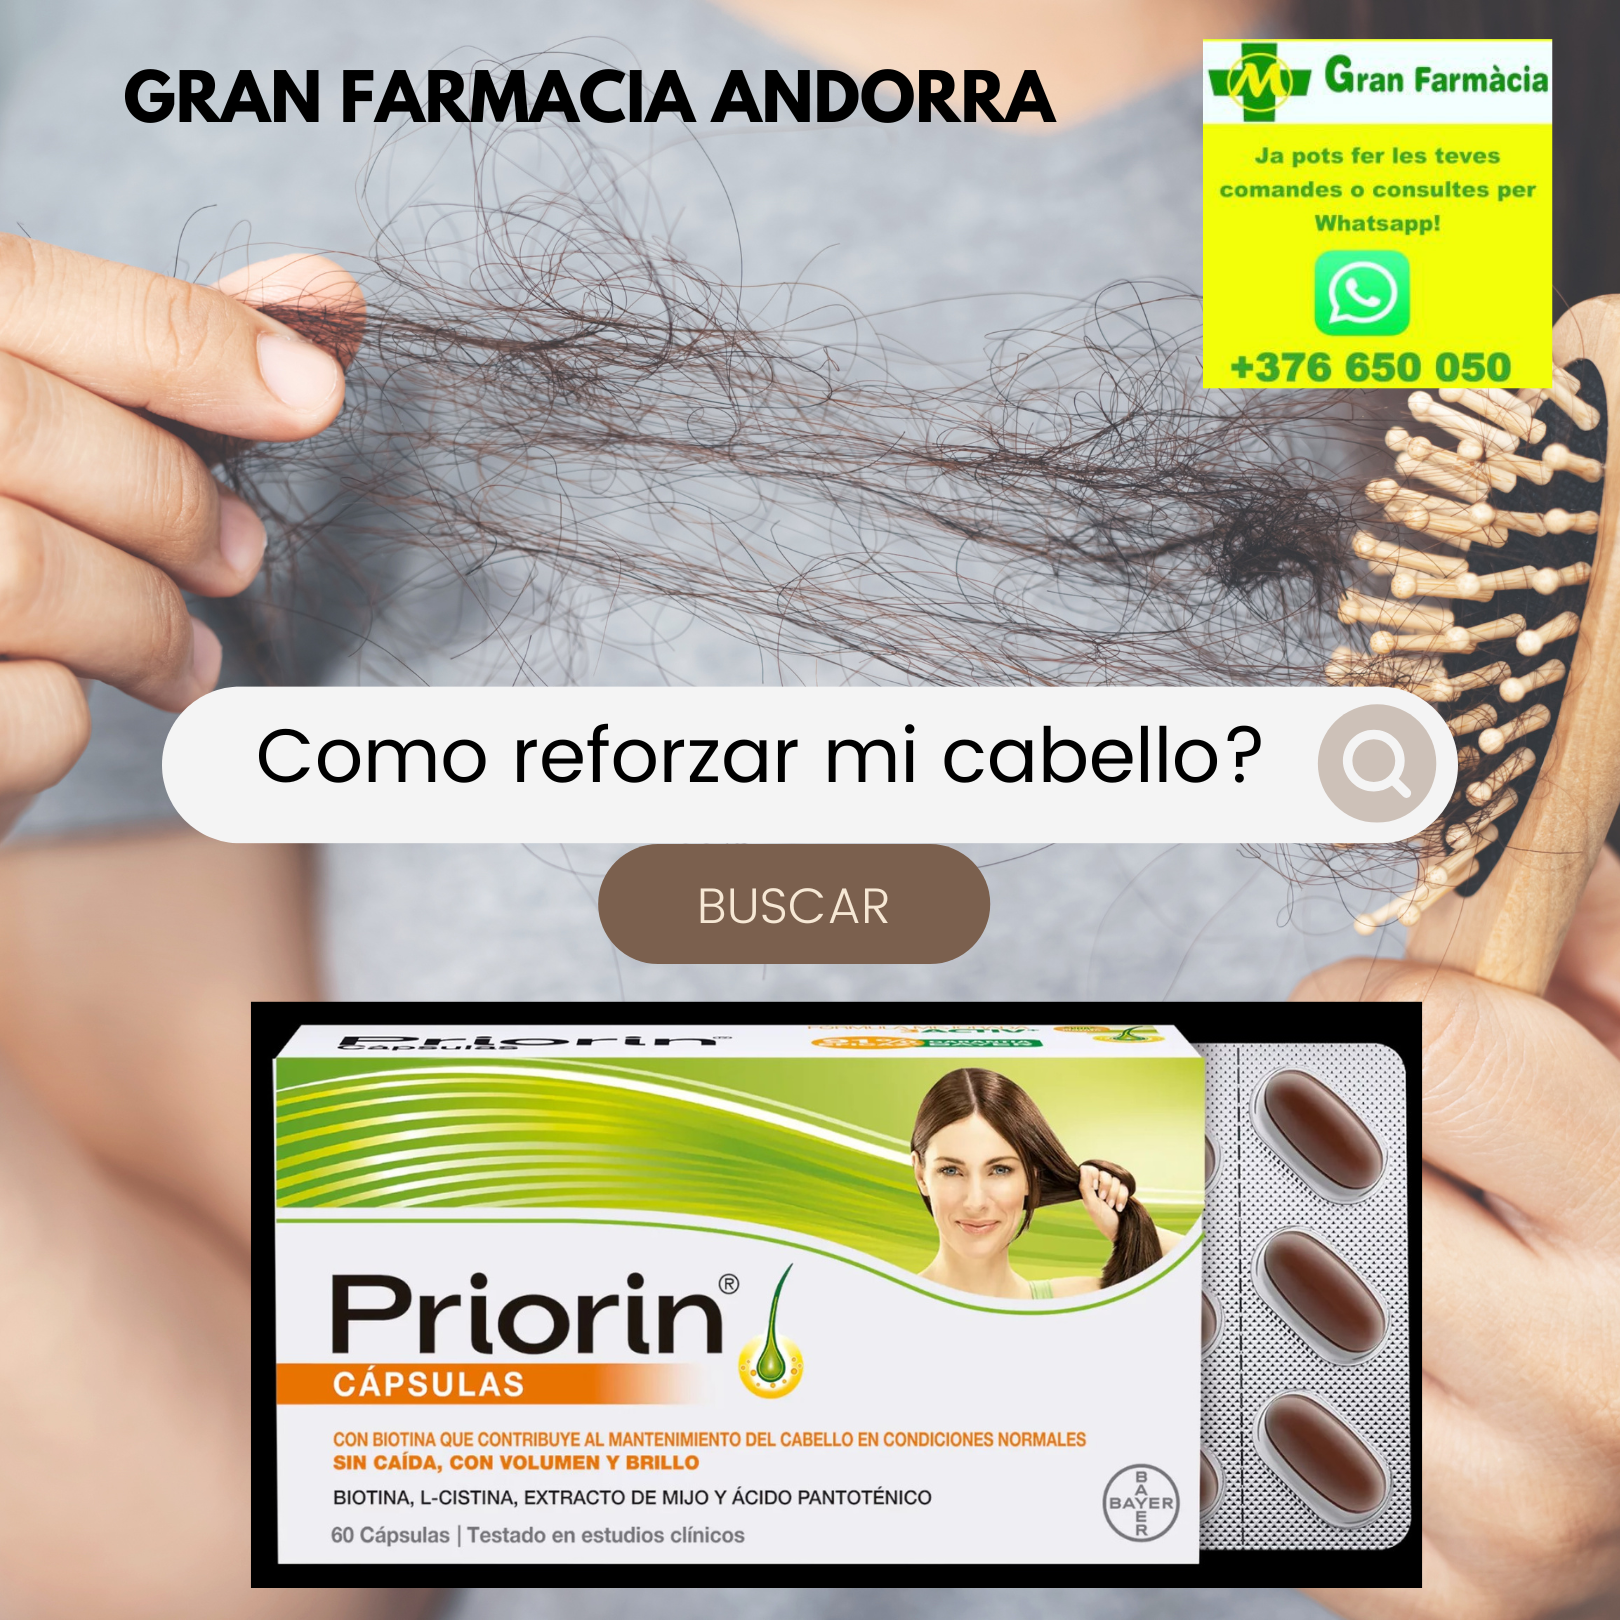 Comprar Priorin® Cápsulas de BAYER en GRAN FARMACIA ANDORRA. Tratamiento para la caída y salud del cabello fórmula con Biotina